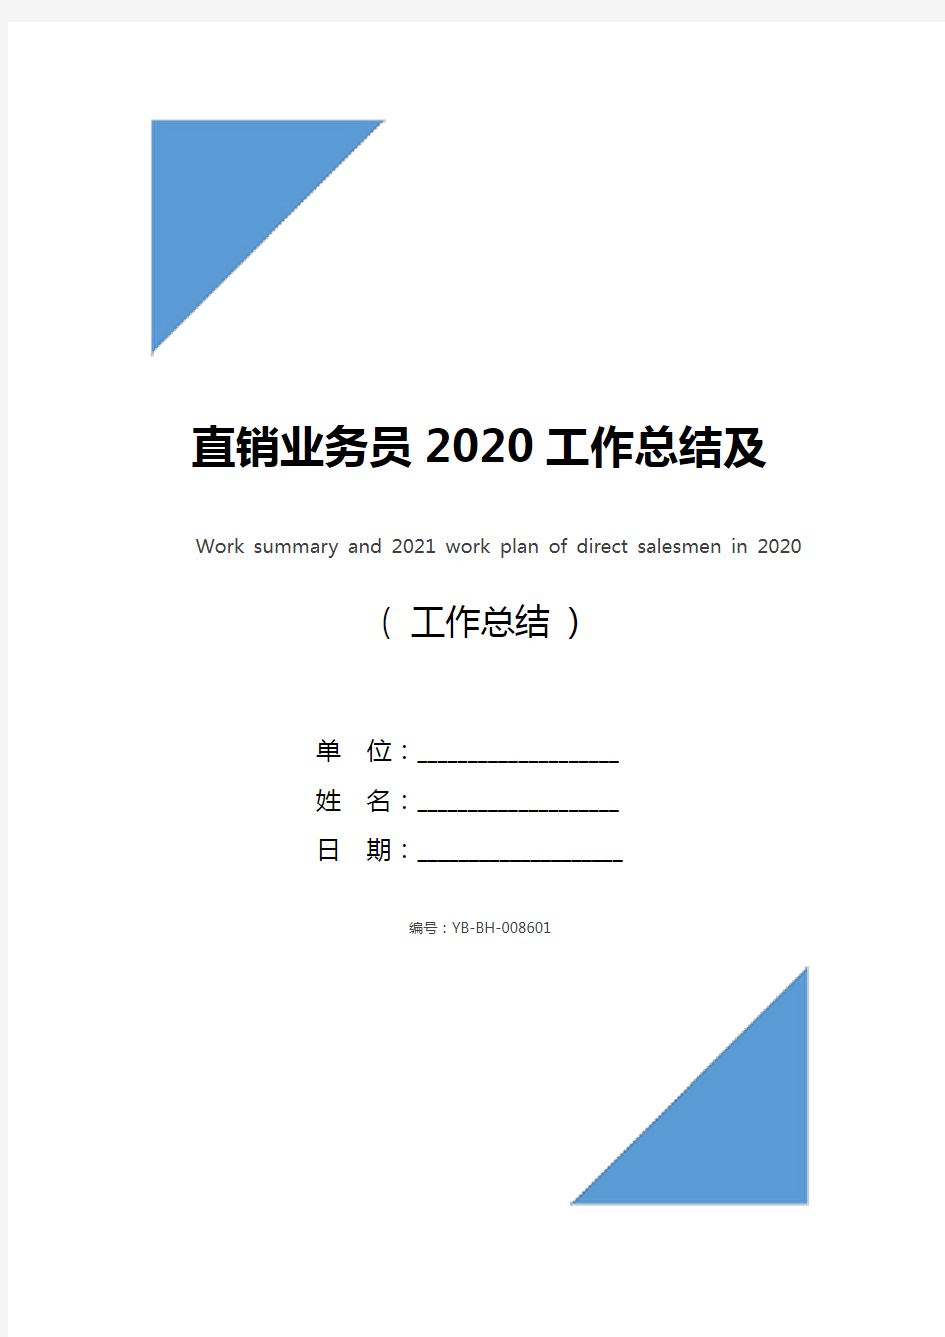 直销业务员2020工作总结及2021工作计划